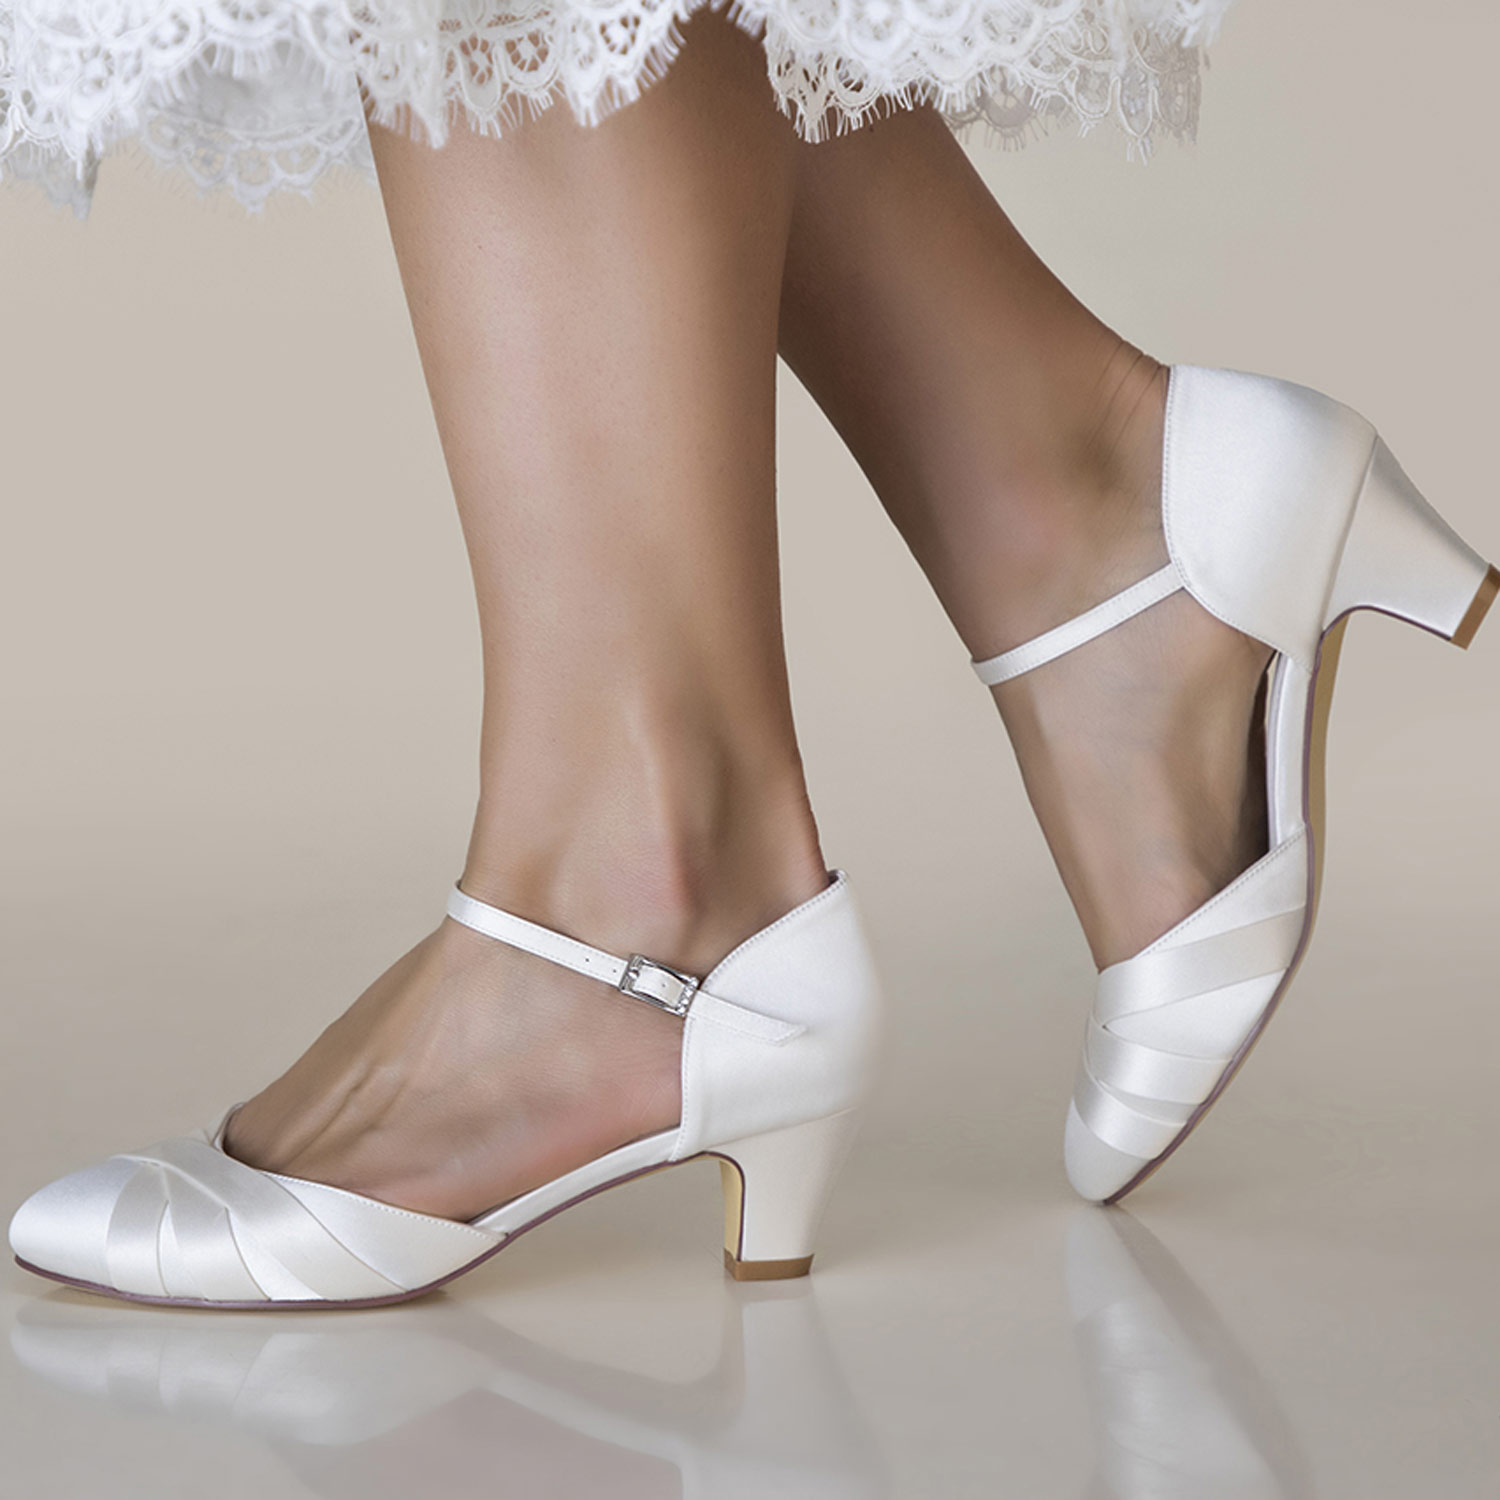 Chaussures de mariée satin ivoire petits talons Blanca